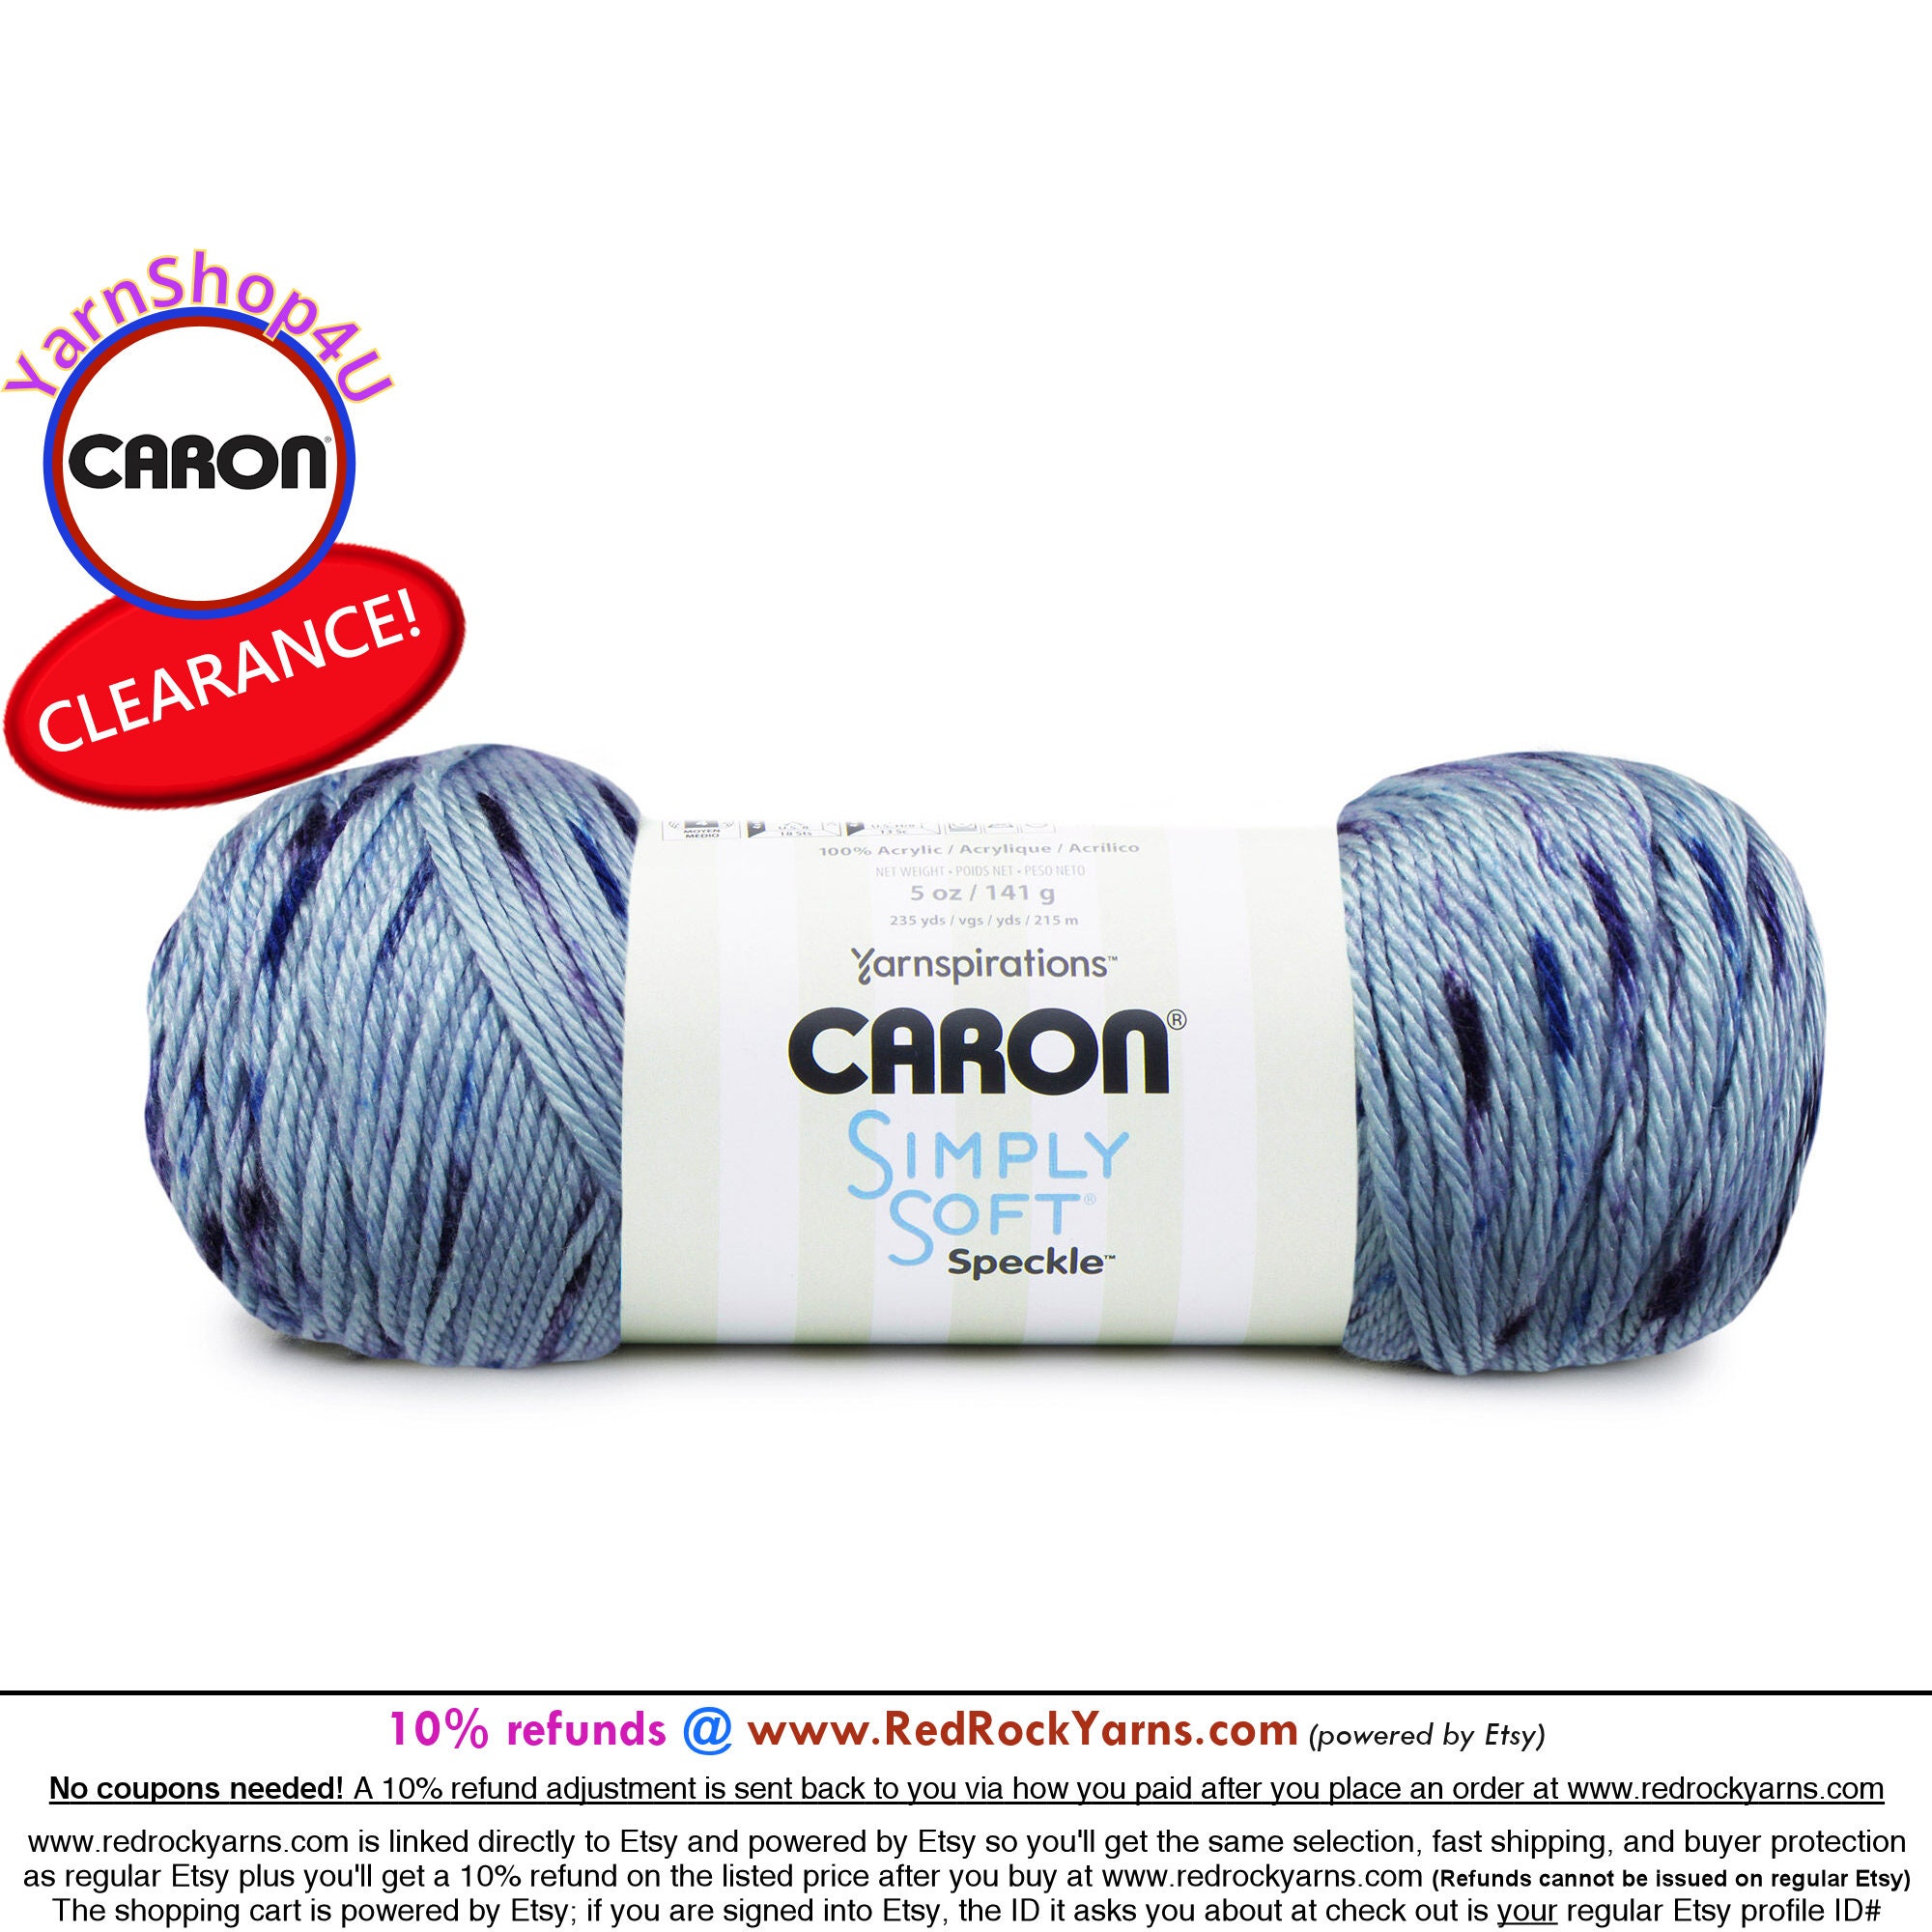 Caron Simply Soft Tweeds Medium Weight 97/3 Blend Yarn - 1 Skein